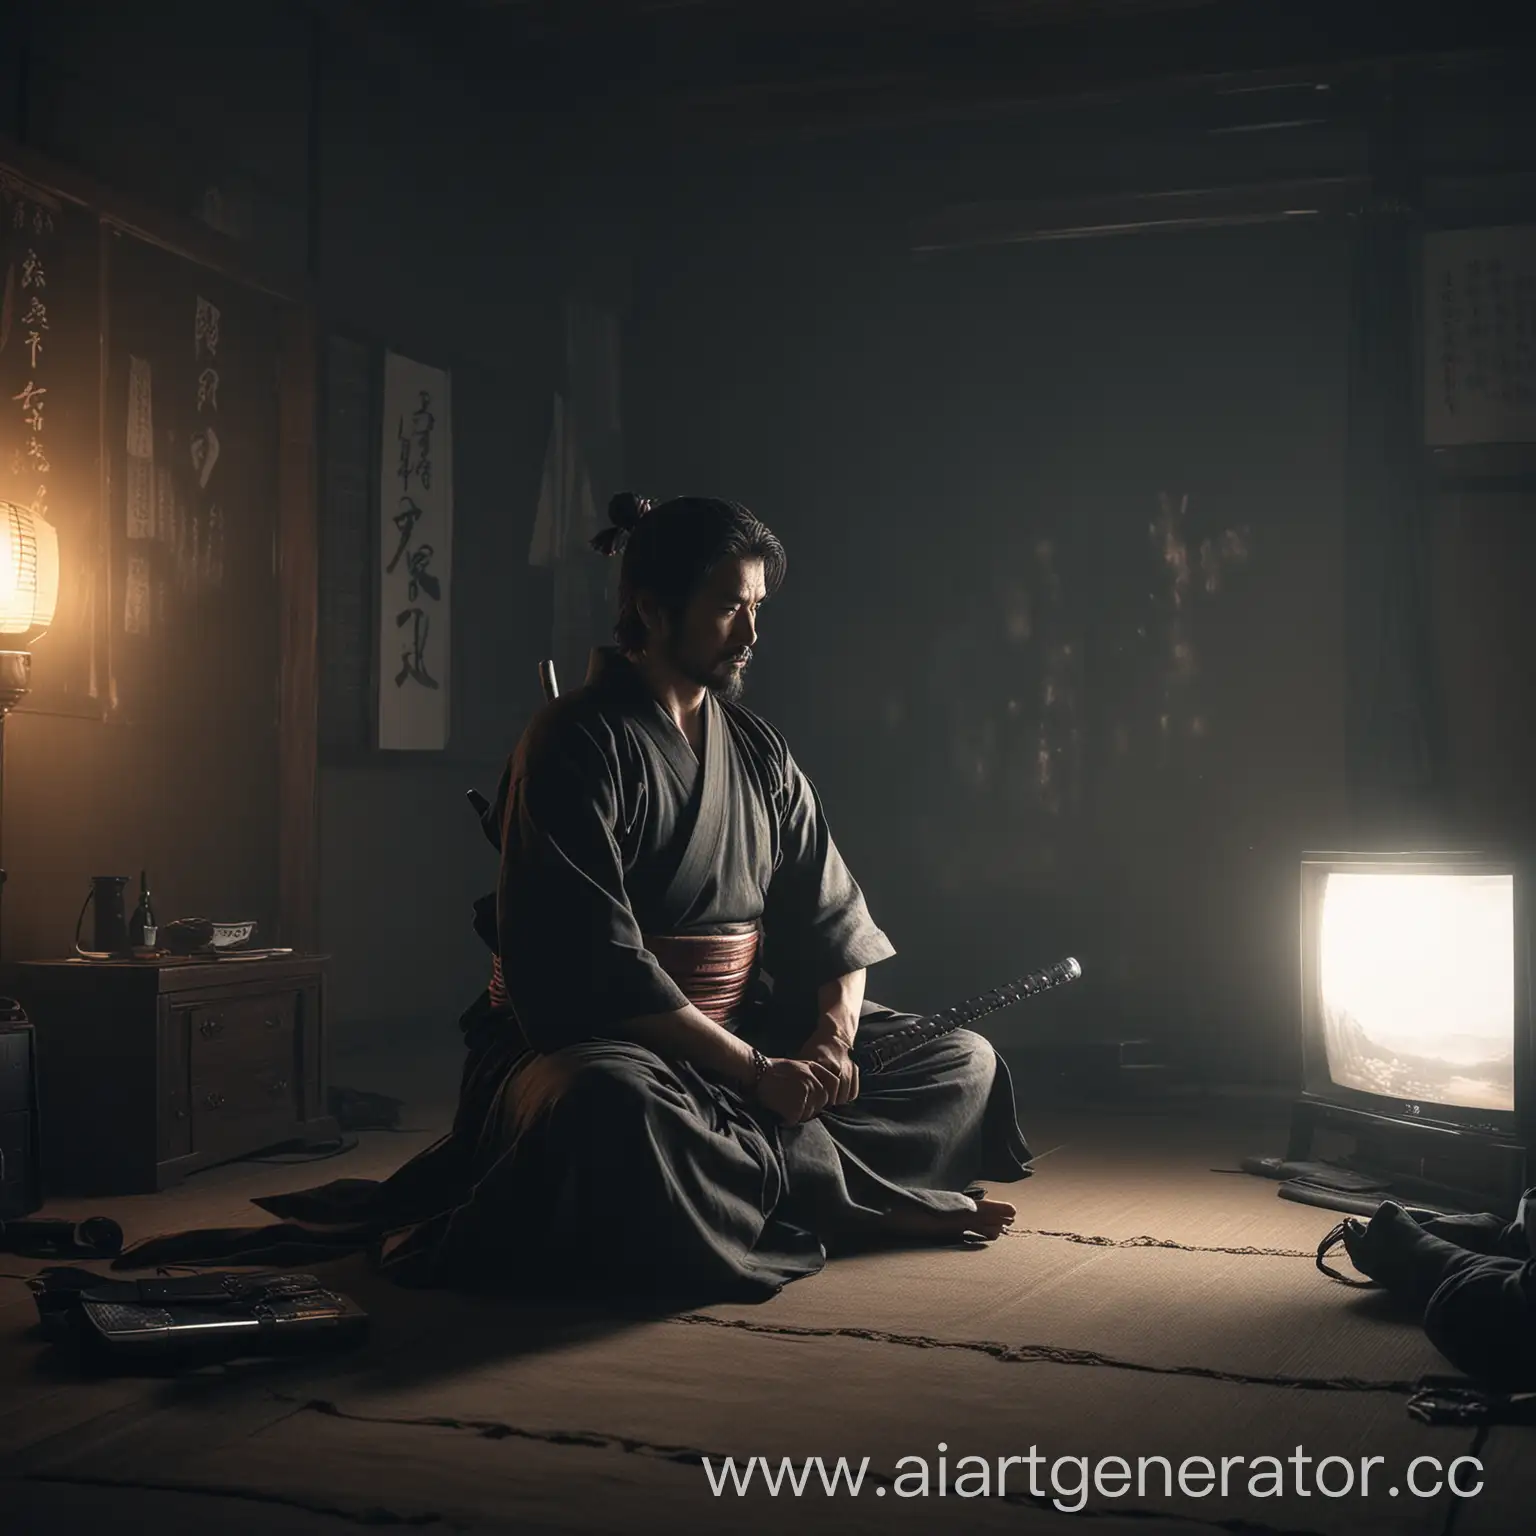 Нарисуй самурая который сидит в позе лотоса у него на коленях лежит катана и он смотрит телевизор в тёмном помещении и свет телевизора освещает его изображение должно быть максимально детализированно удели особое внимание деталям